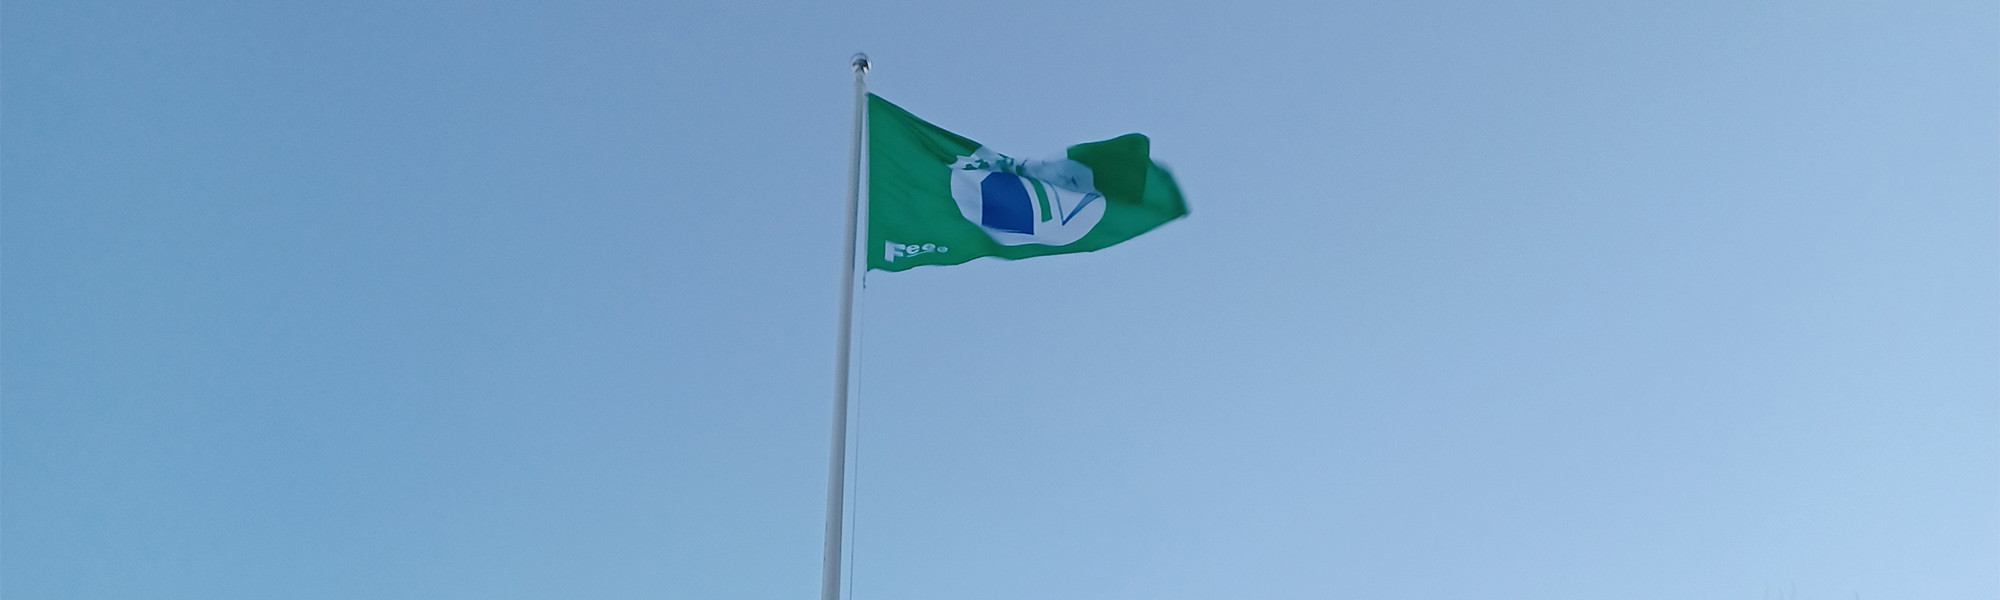 Vihreä lippu liehuu sinisellä taivaalla.